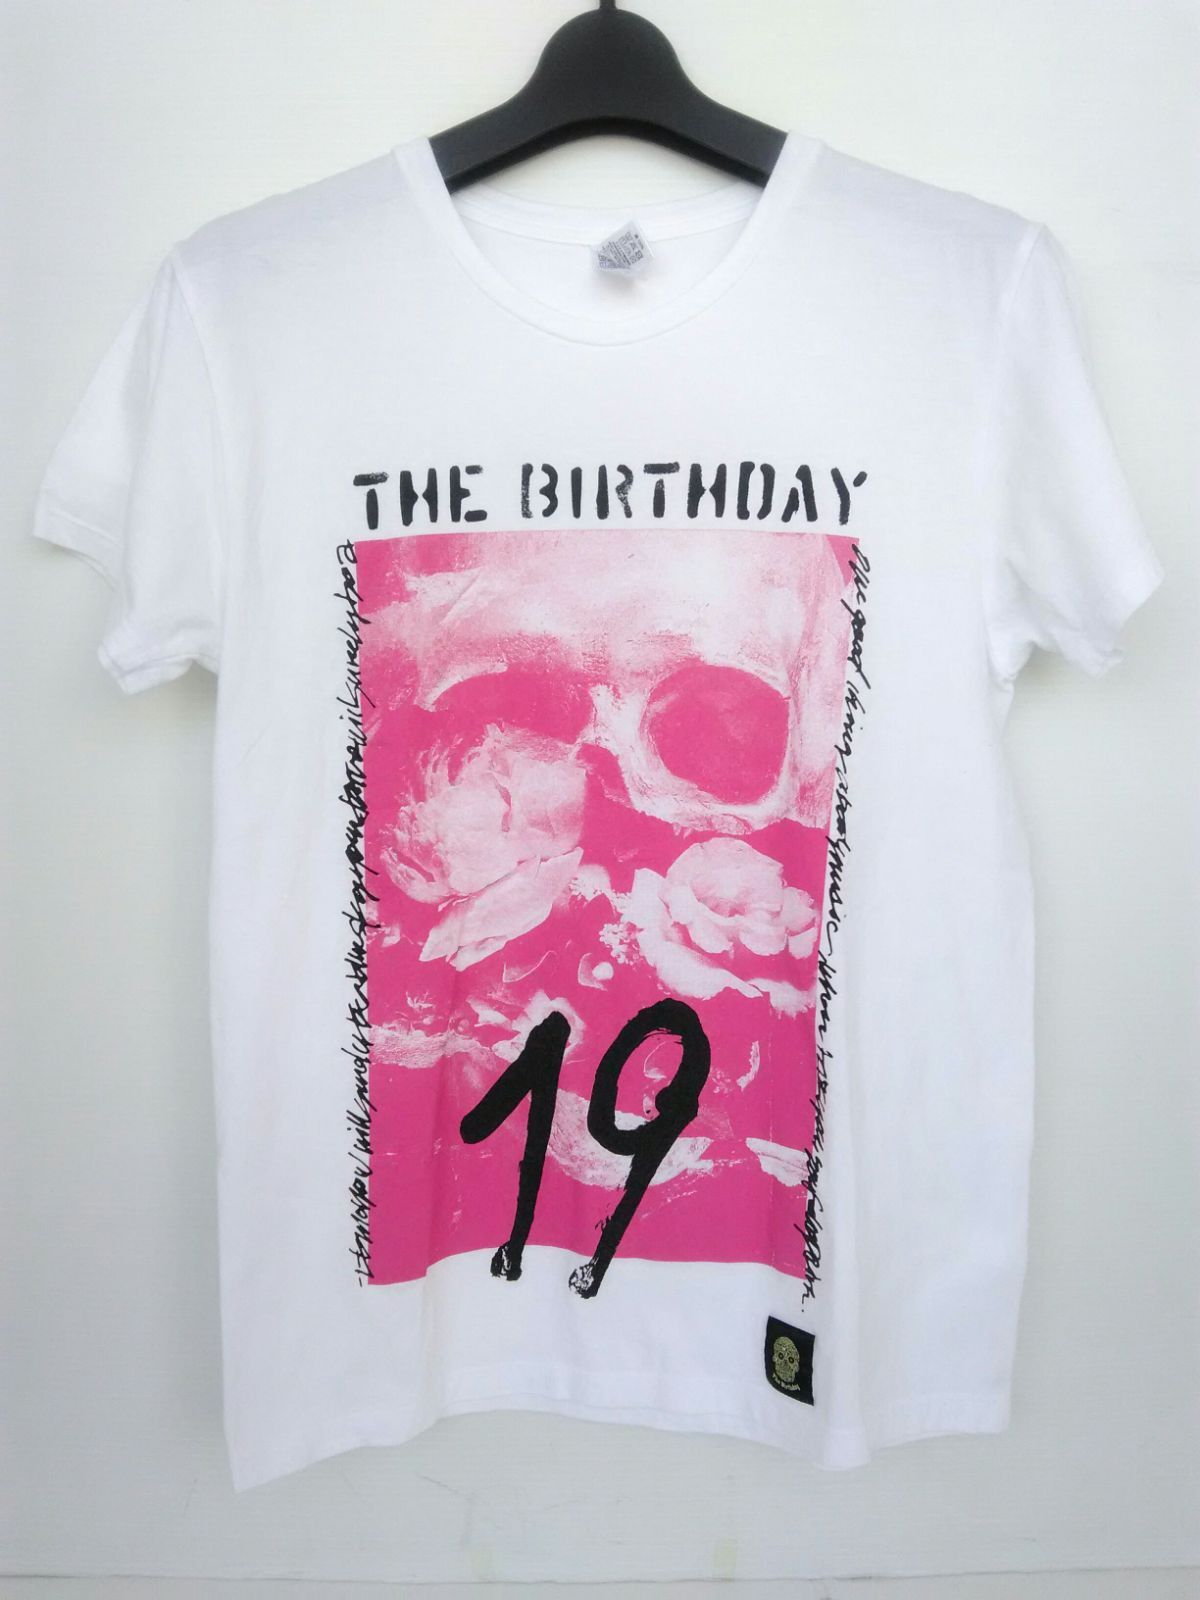 The Birthday バースデイ 2018 Tシャツ Sサイズ 2枚セット① 